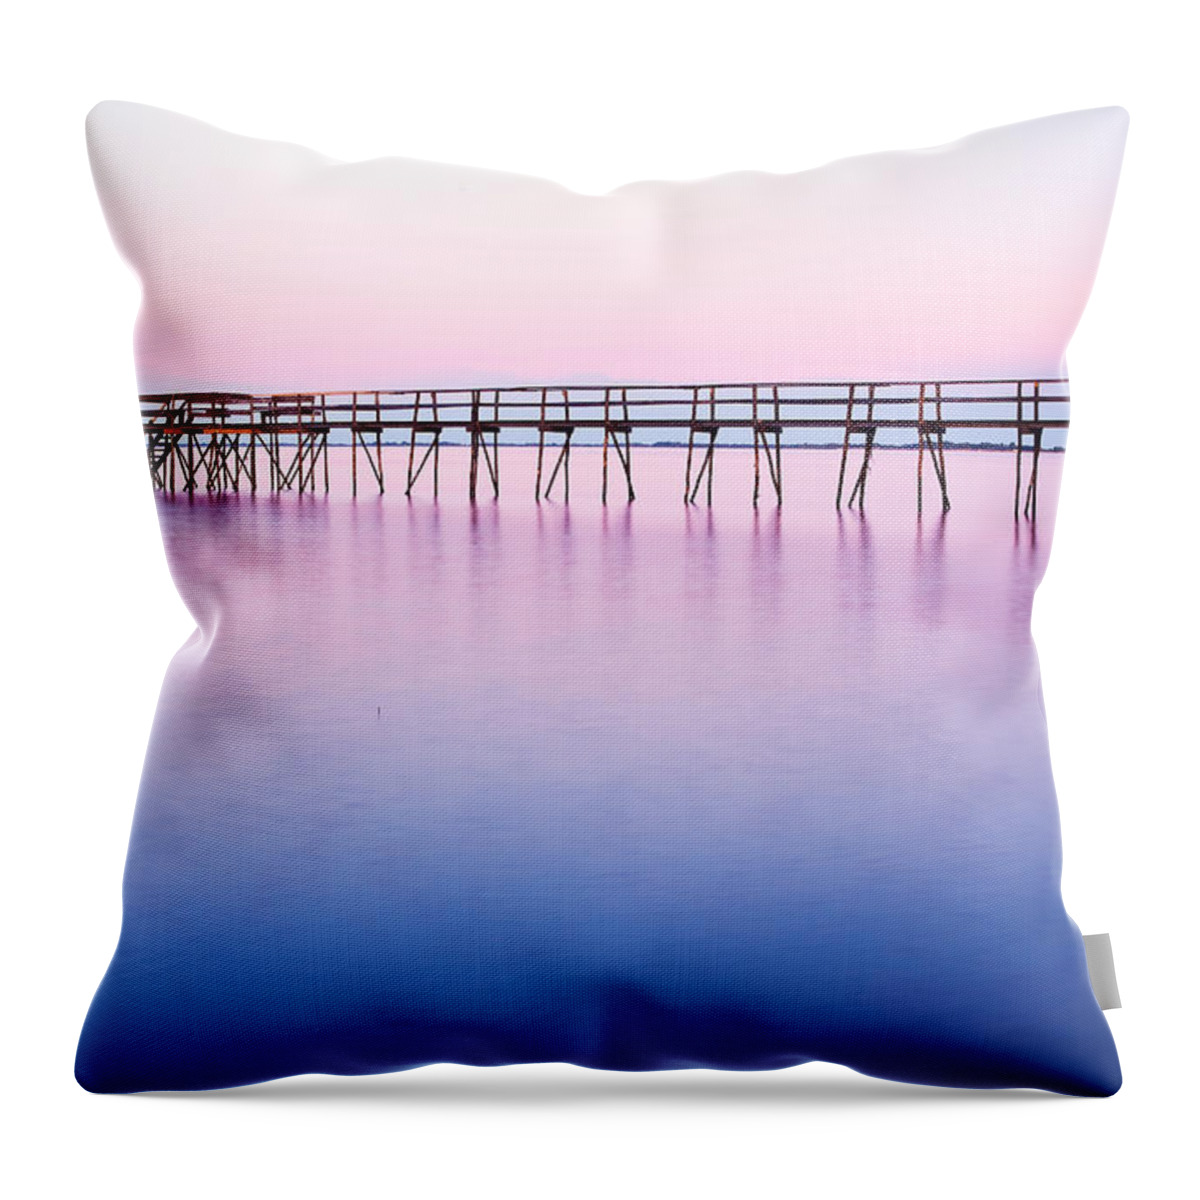 Light Throw Pillow featuring the photograph Pier On Lake Winnipeg by Ken Gillespie